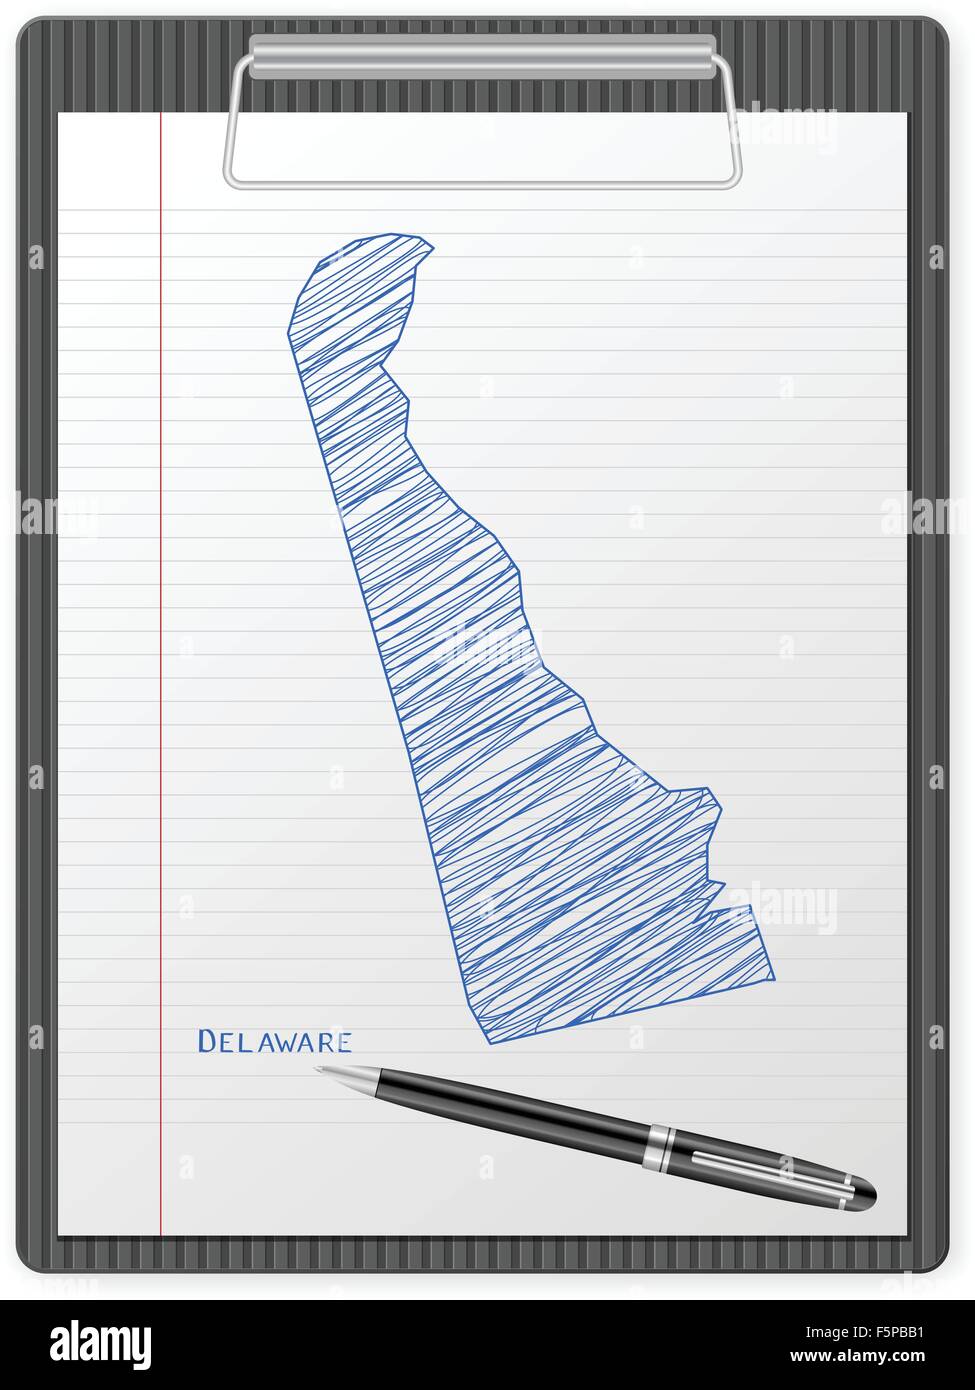 Zwischenablage mit Delaware Karte zeichnen. Vektor-Illustration. Stock Vektor